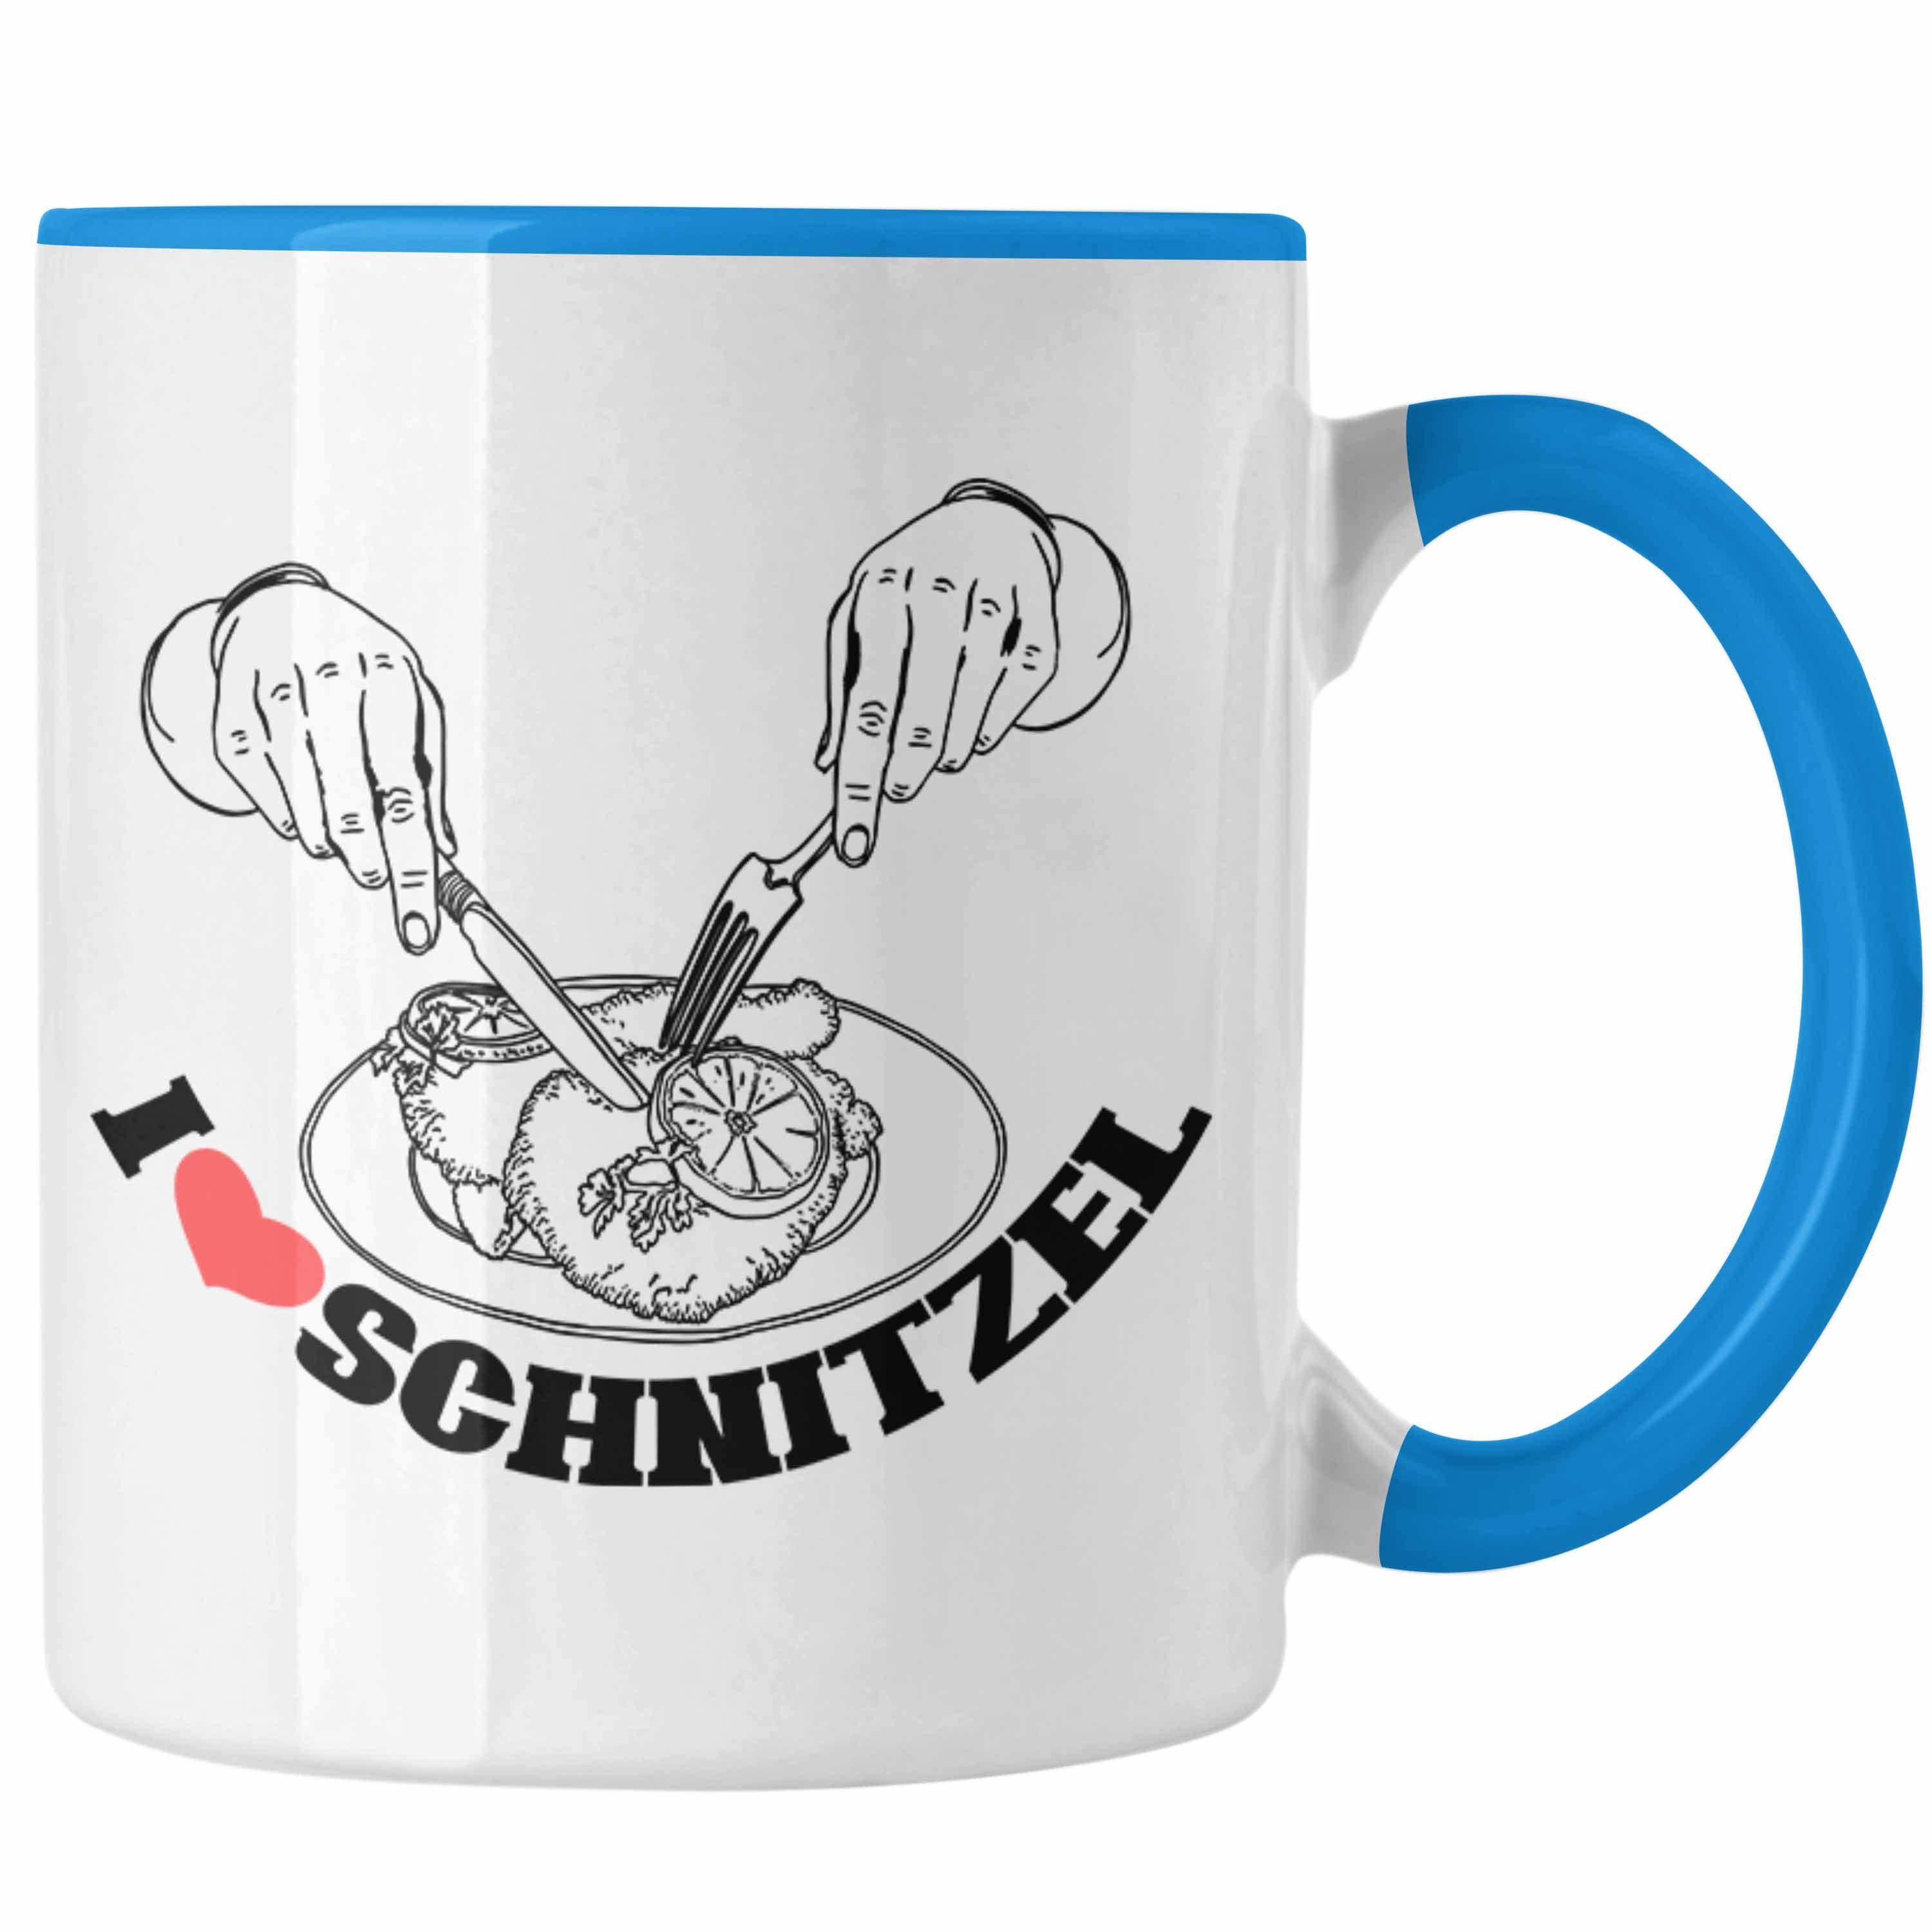 Trendation Tasse Schnitzel-Tasse Geschenk für Schnitzel-Liebhaber Blau